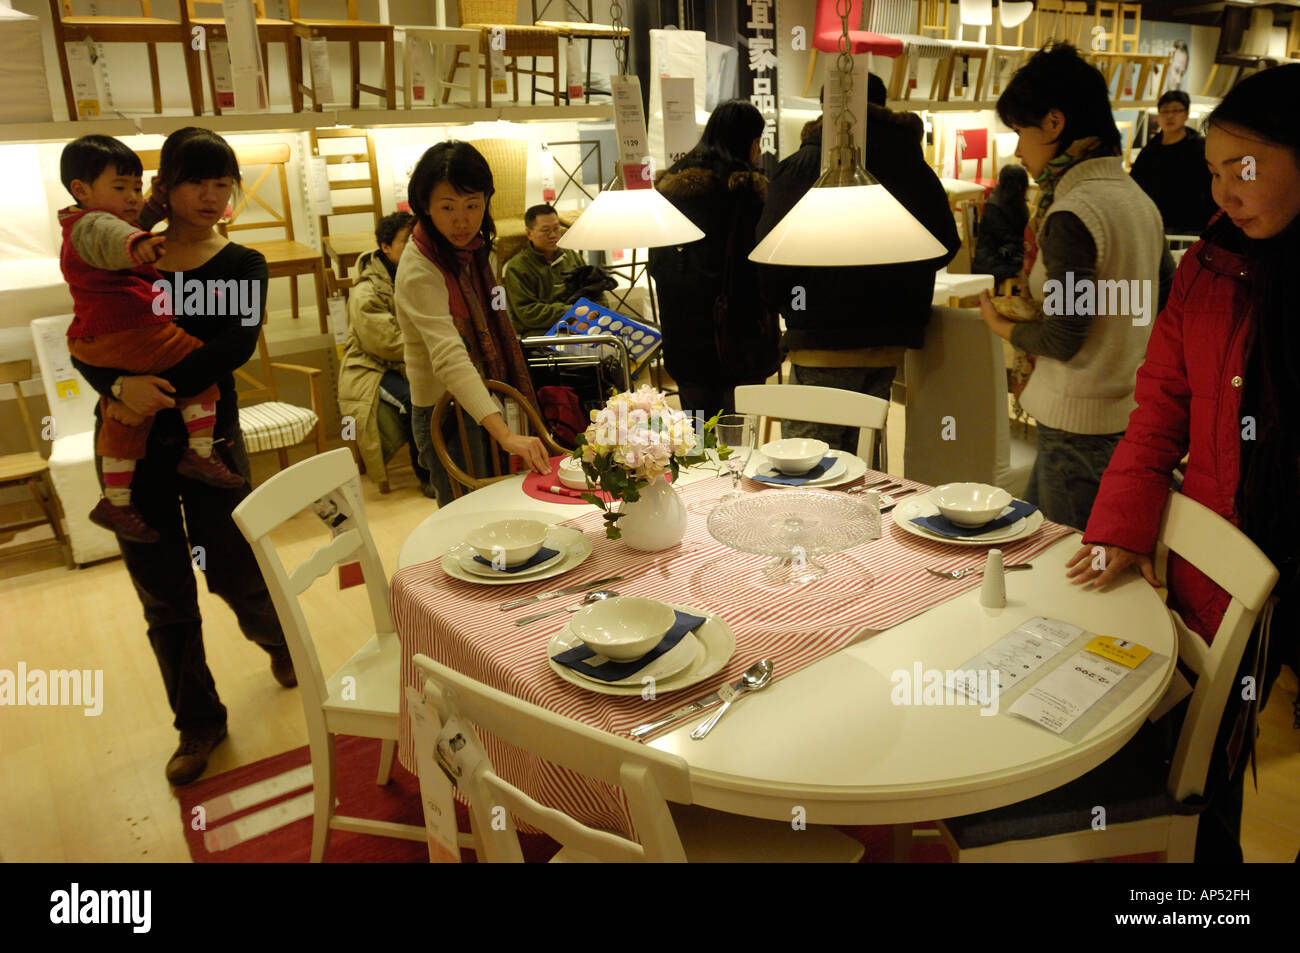 Les clients à faire leurs achats dans un magasin Ikea à Pékin, en Chine. 19 Jan 2008 Banque D'Images